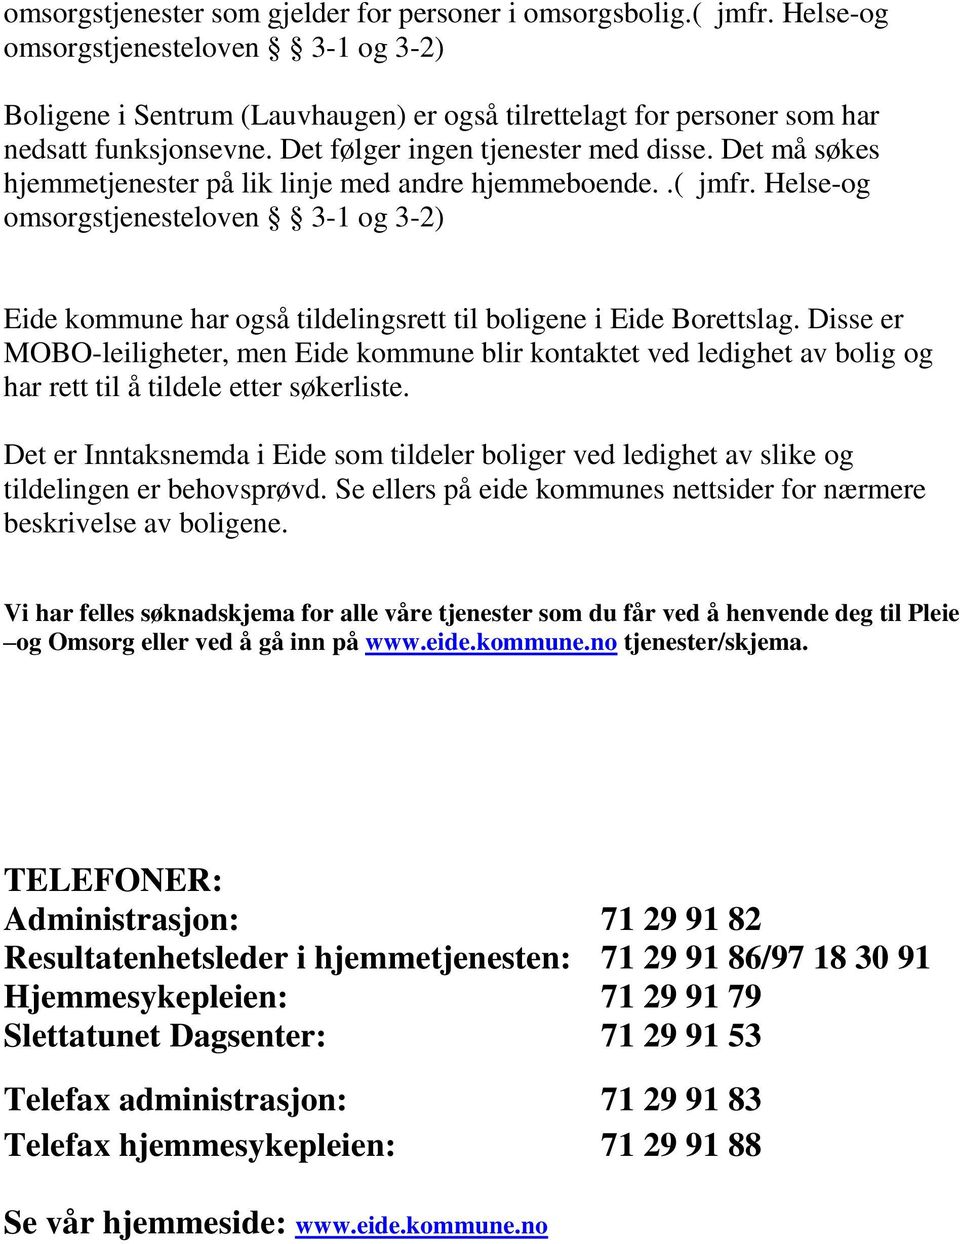 Det må søkes hjemmetjenester på lik linje med andre hjemmeboende..( jmfr. Helse-og omsorgstjenesteloven 3-1 og 3-2) Eide kommune har også tildelingsrett til boligene i Eide Borettslag.